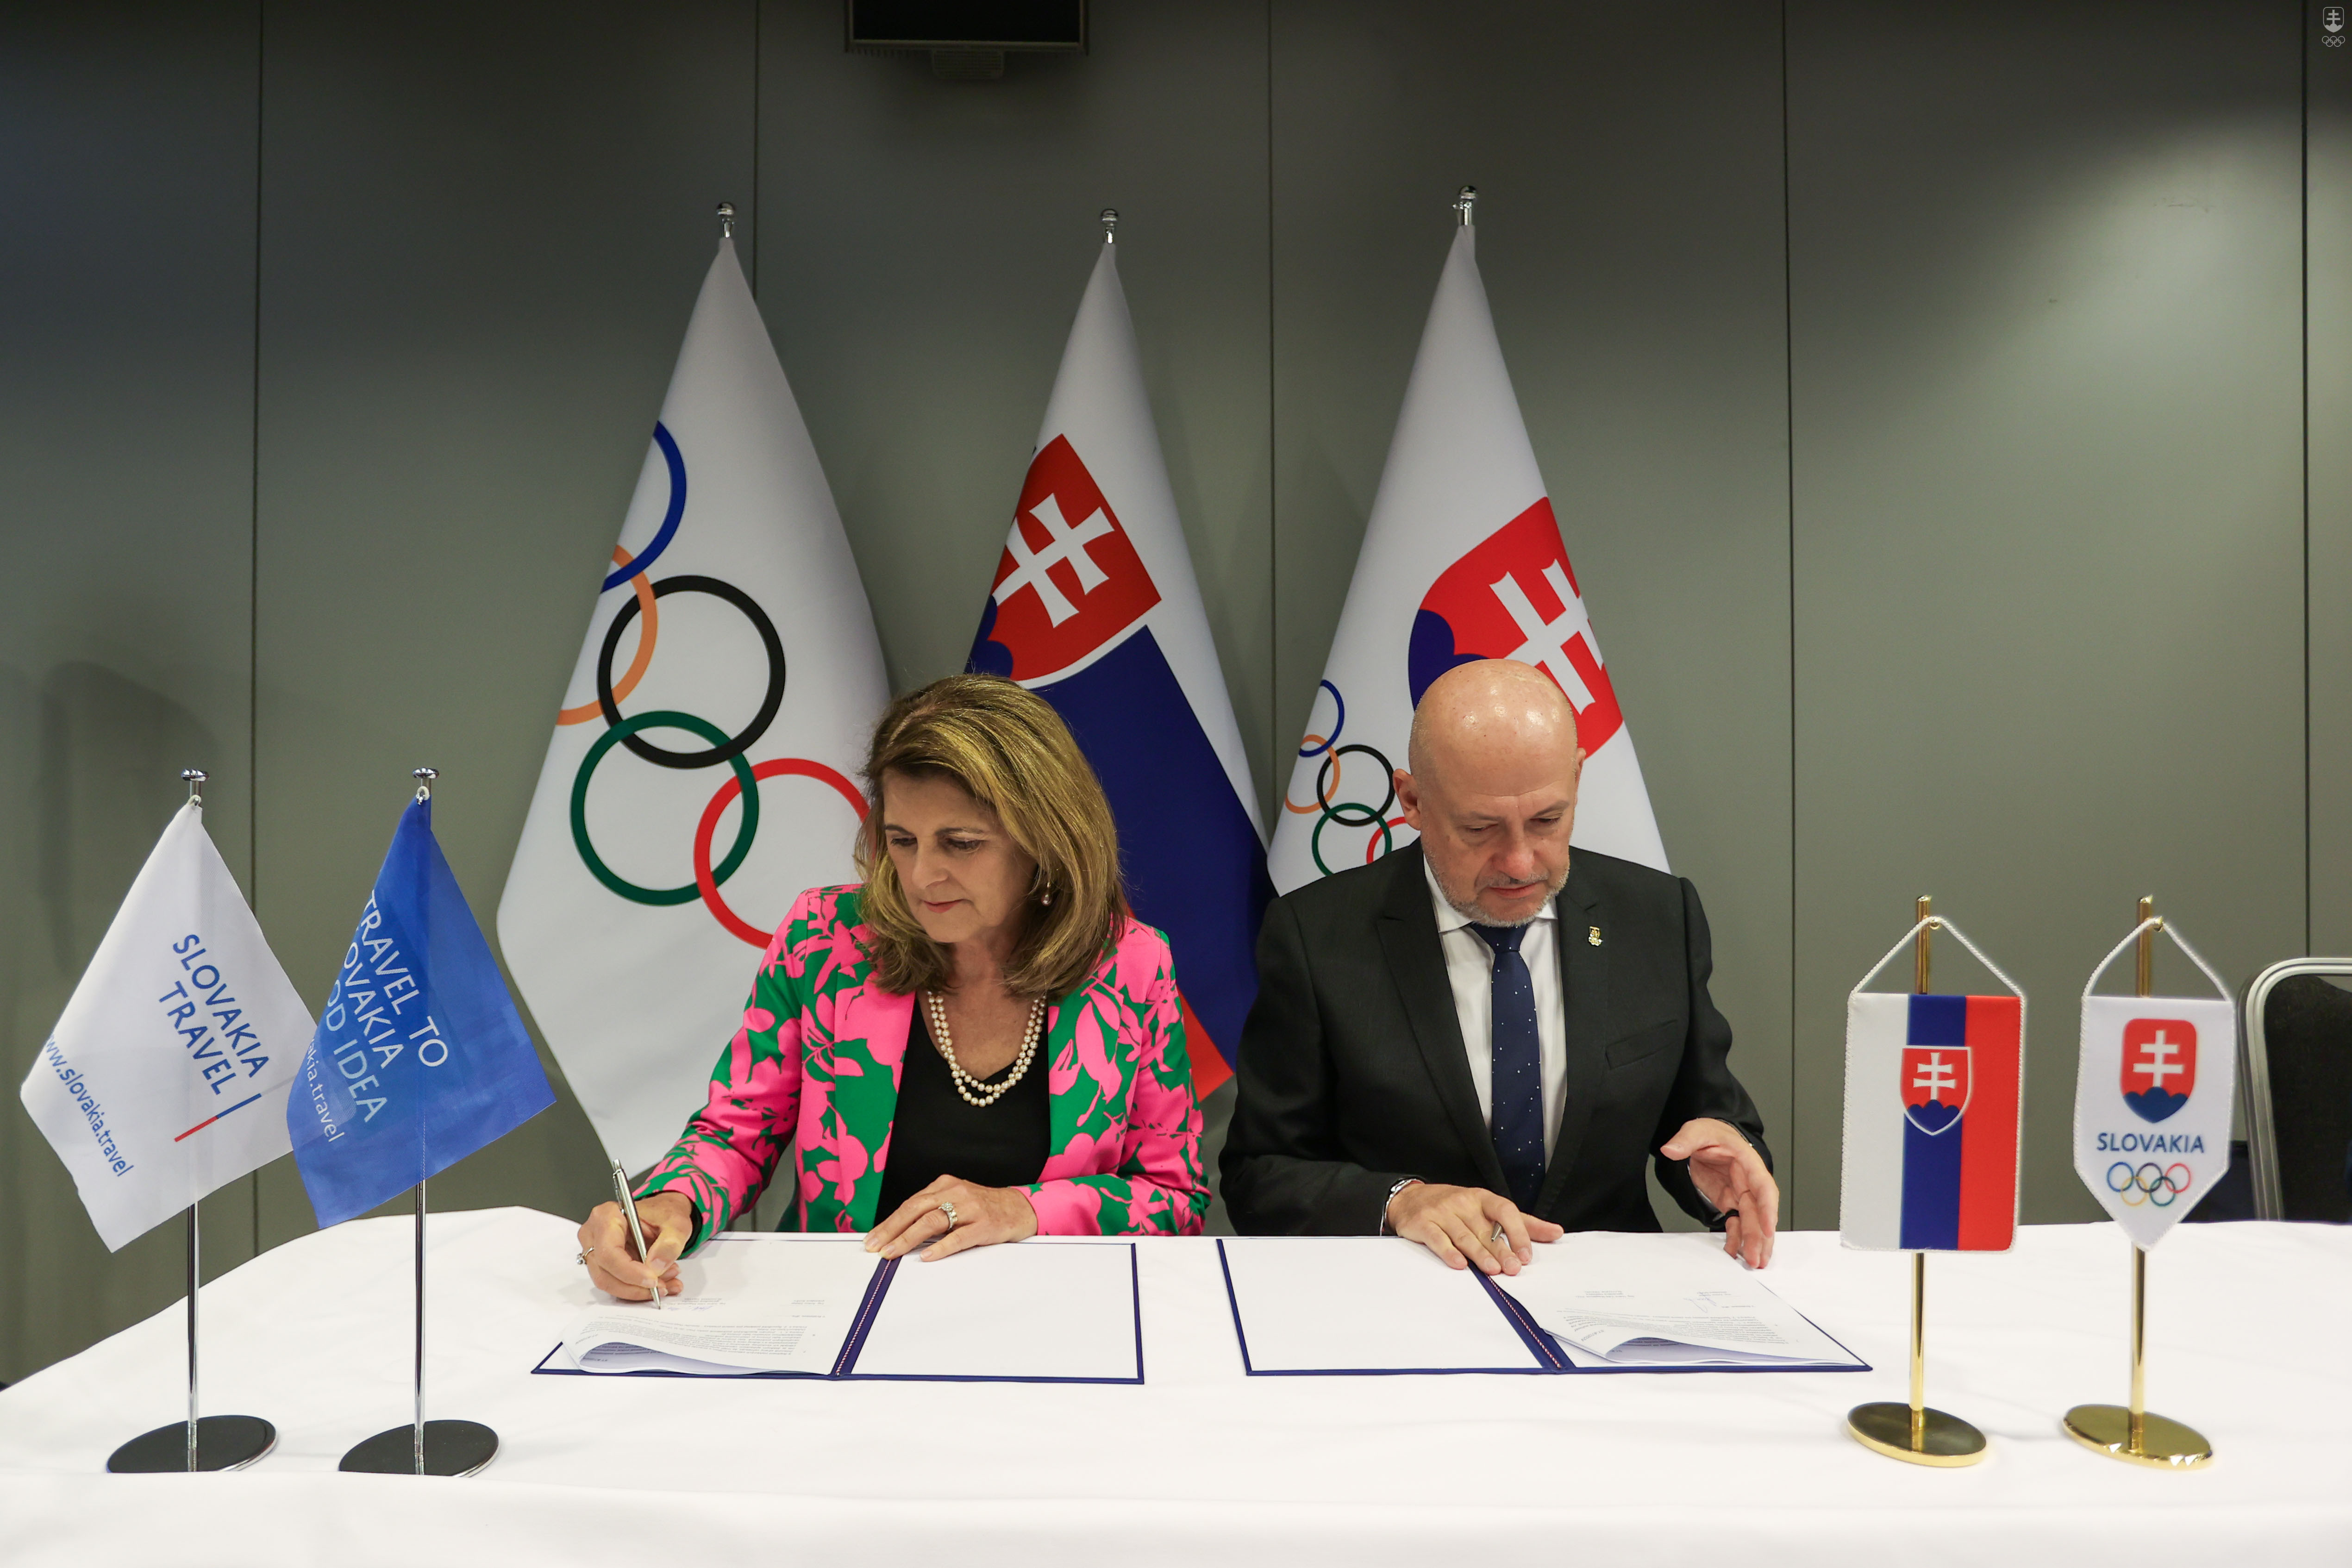 Zmluvu o vzájomnej spolupráci pred 65. VZ SOŠV podpísali generálna riaditeľka Slovakia travel Ivana Vala Magátová a prezident Slovenského olympijského a športového výboru Anton Siekel.